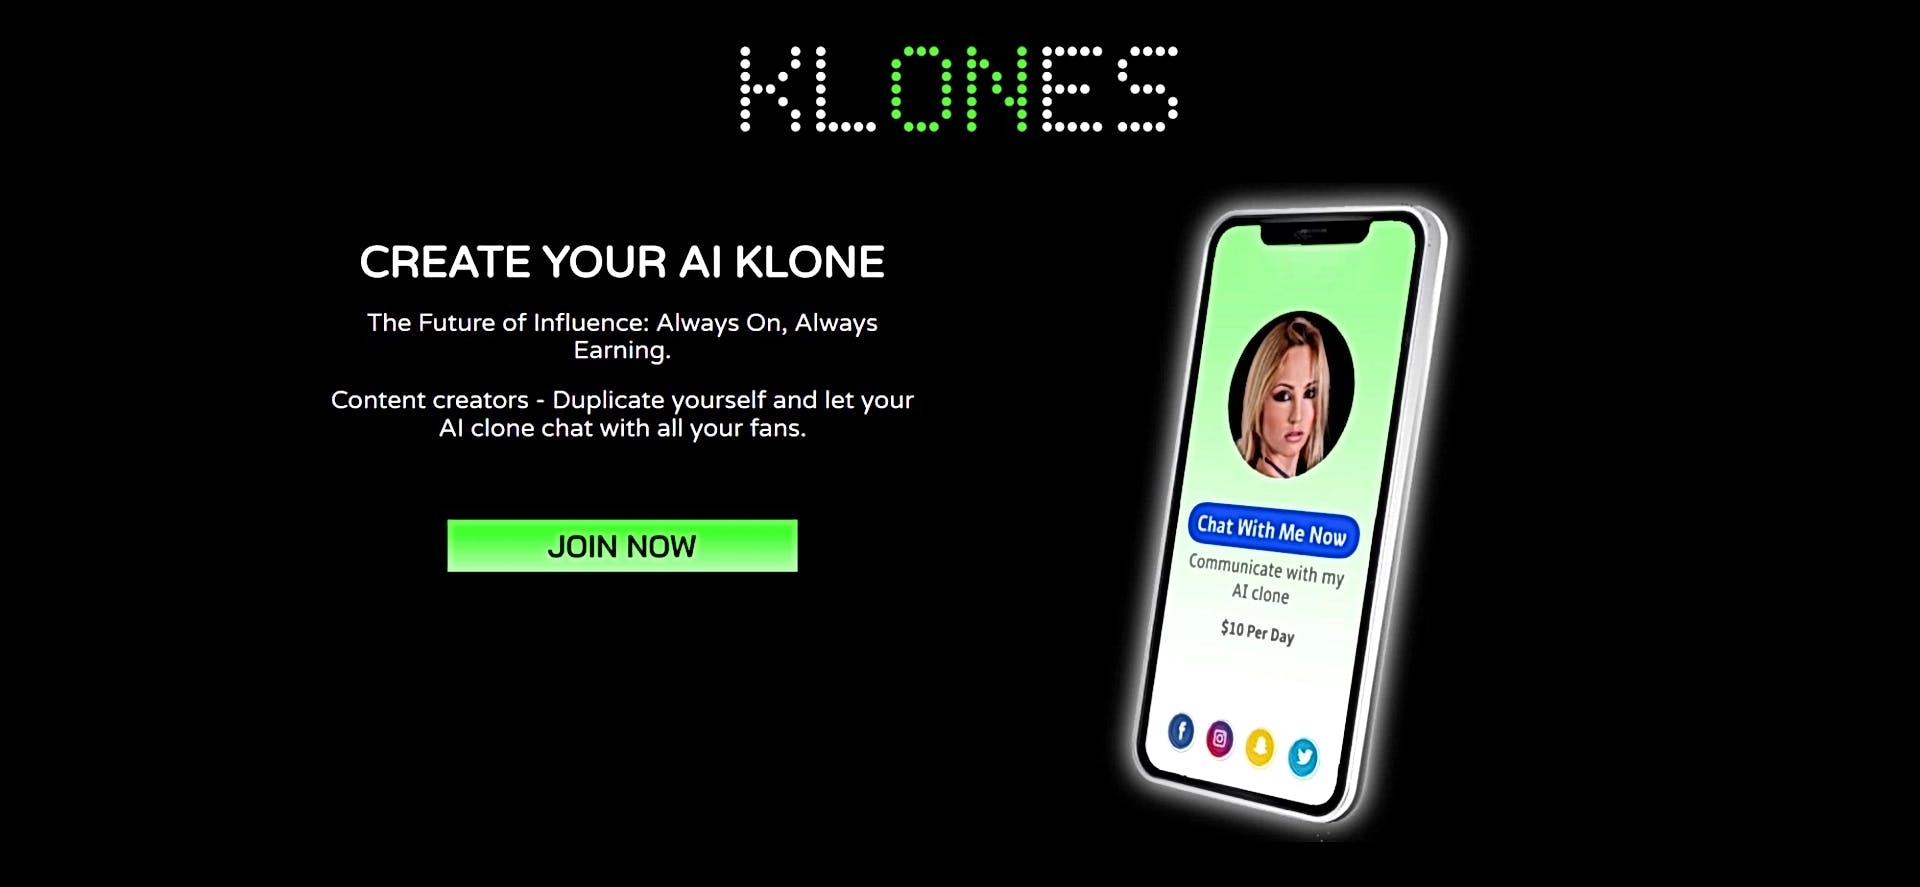 Klones featured